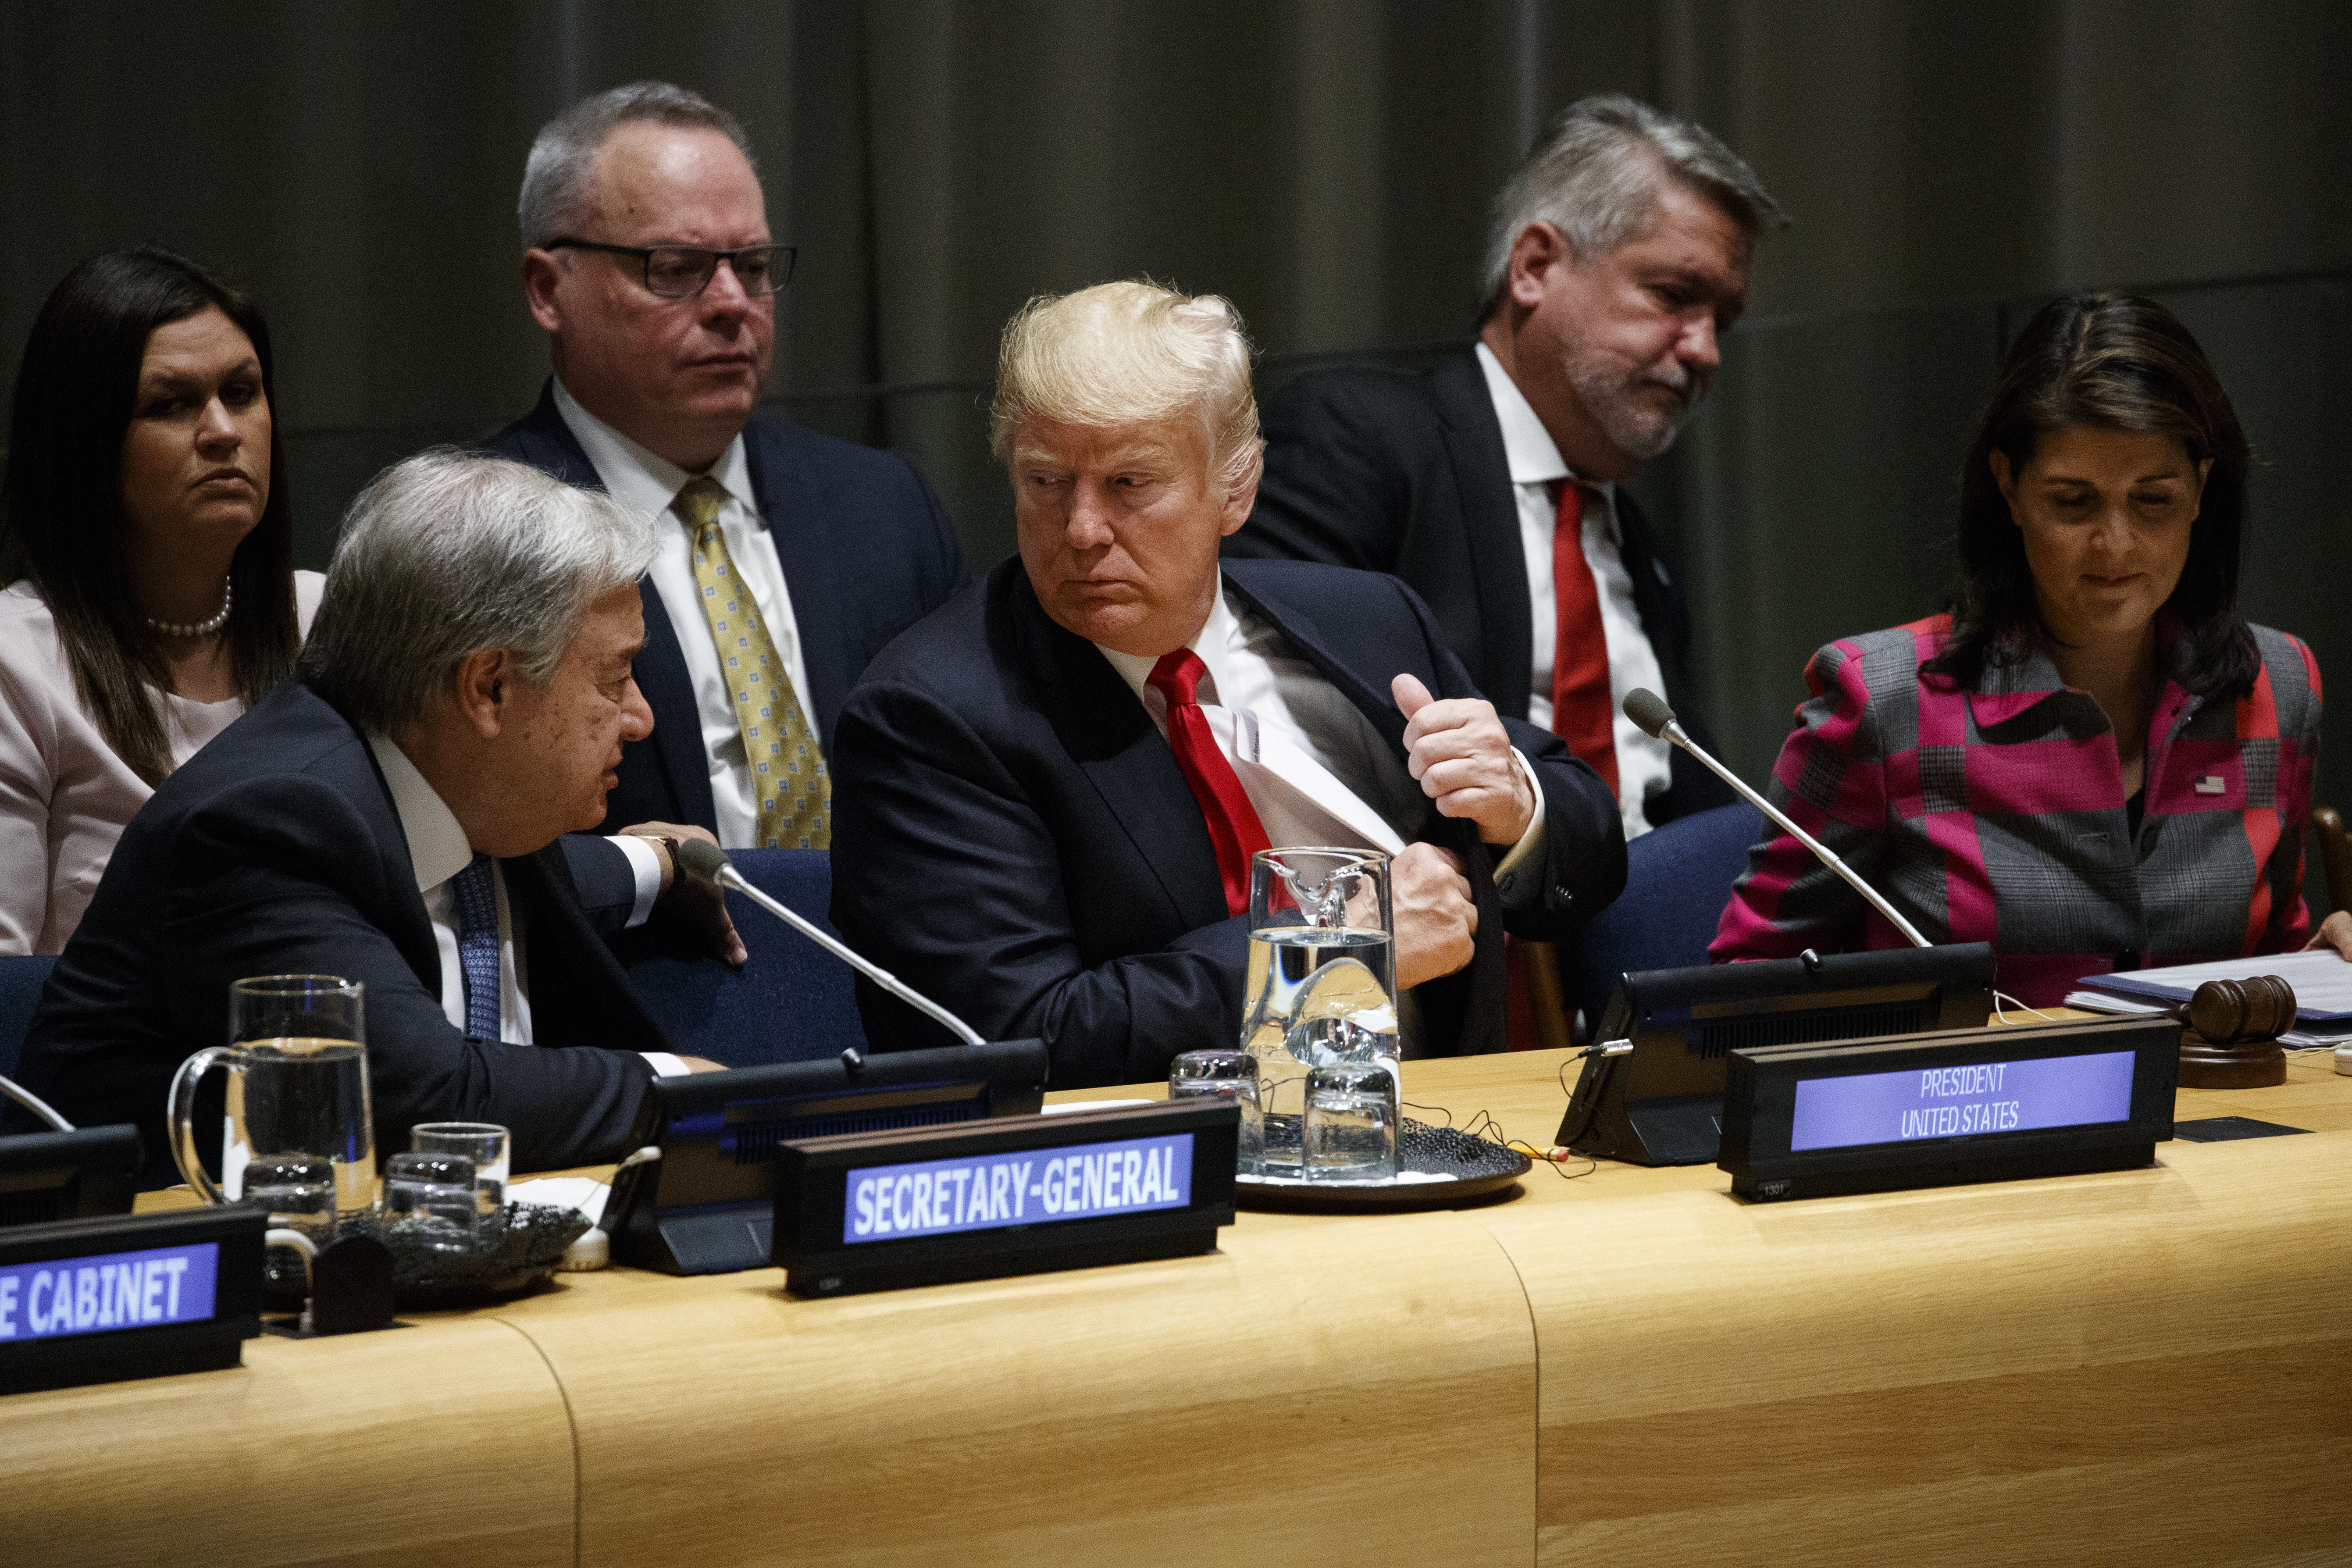 Donald Trump with UN secretary general Antonio Guterres